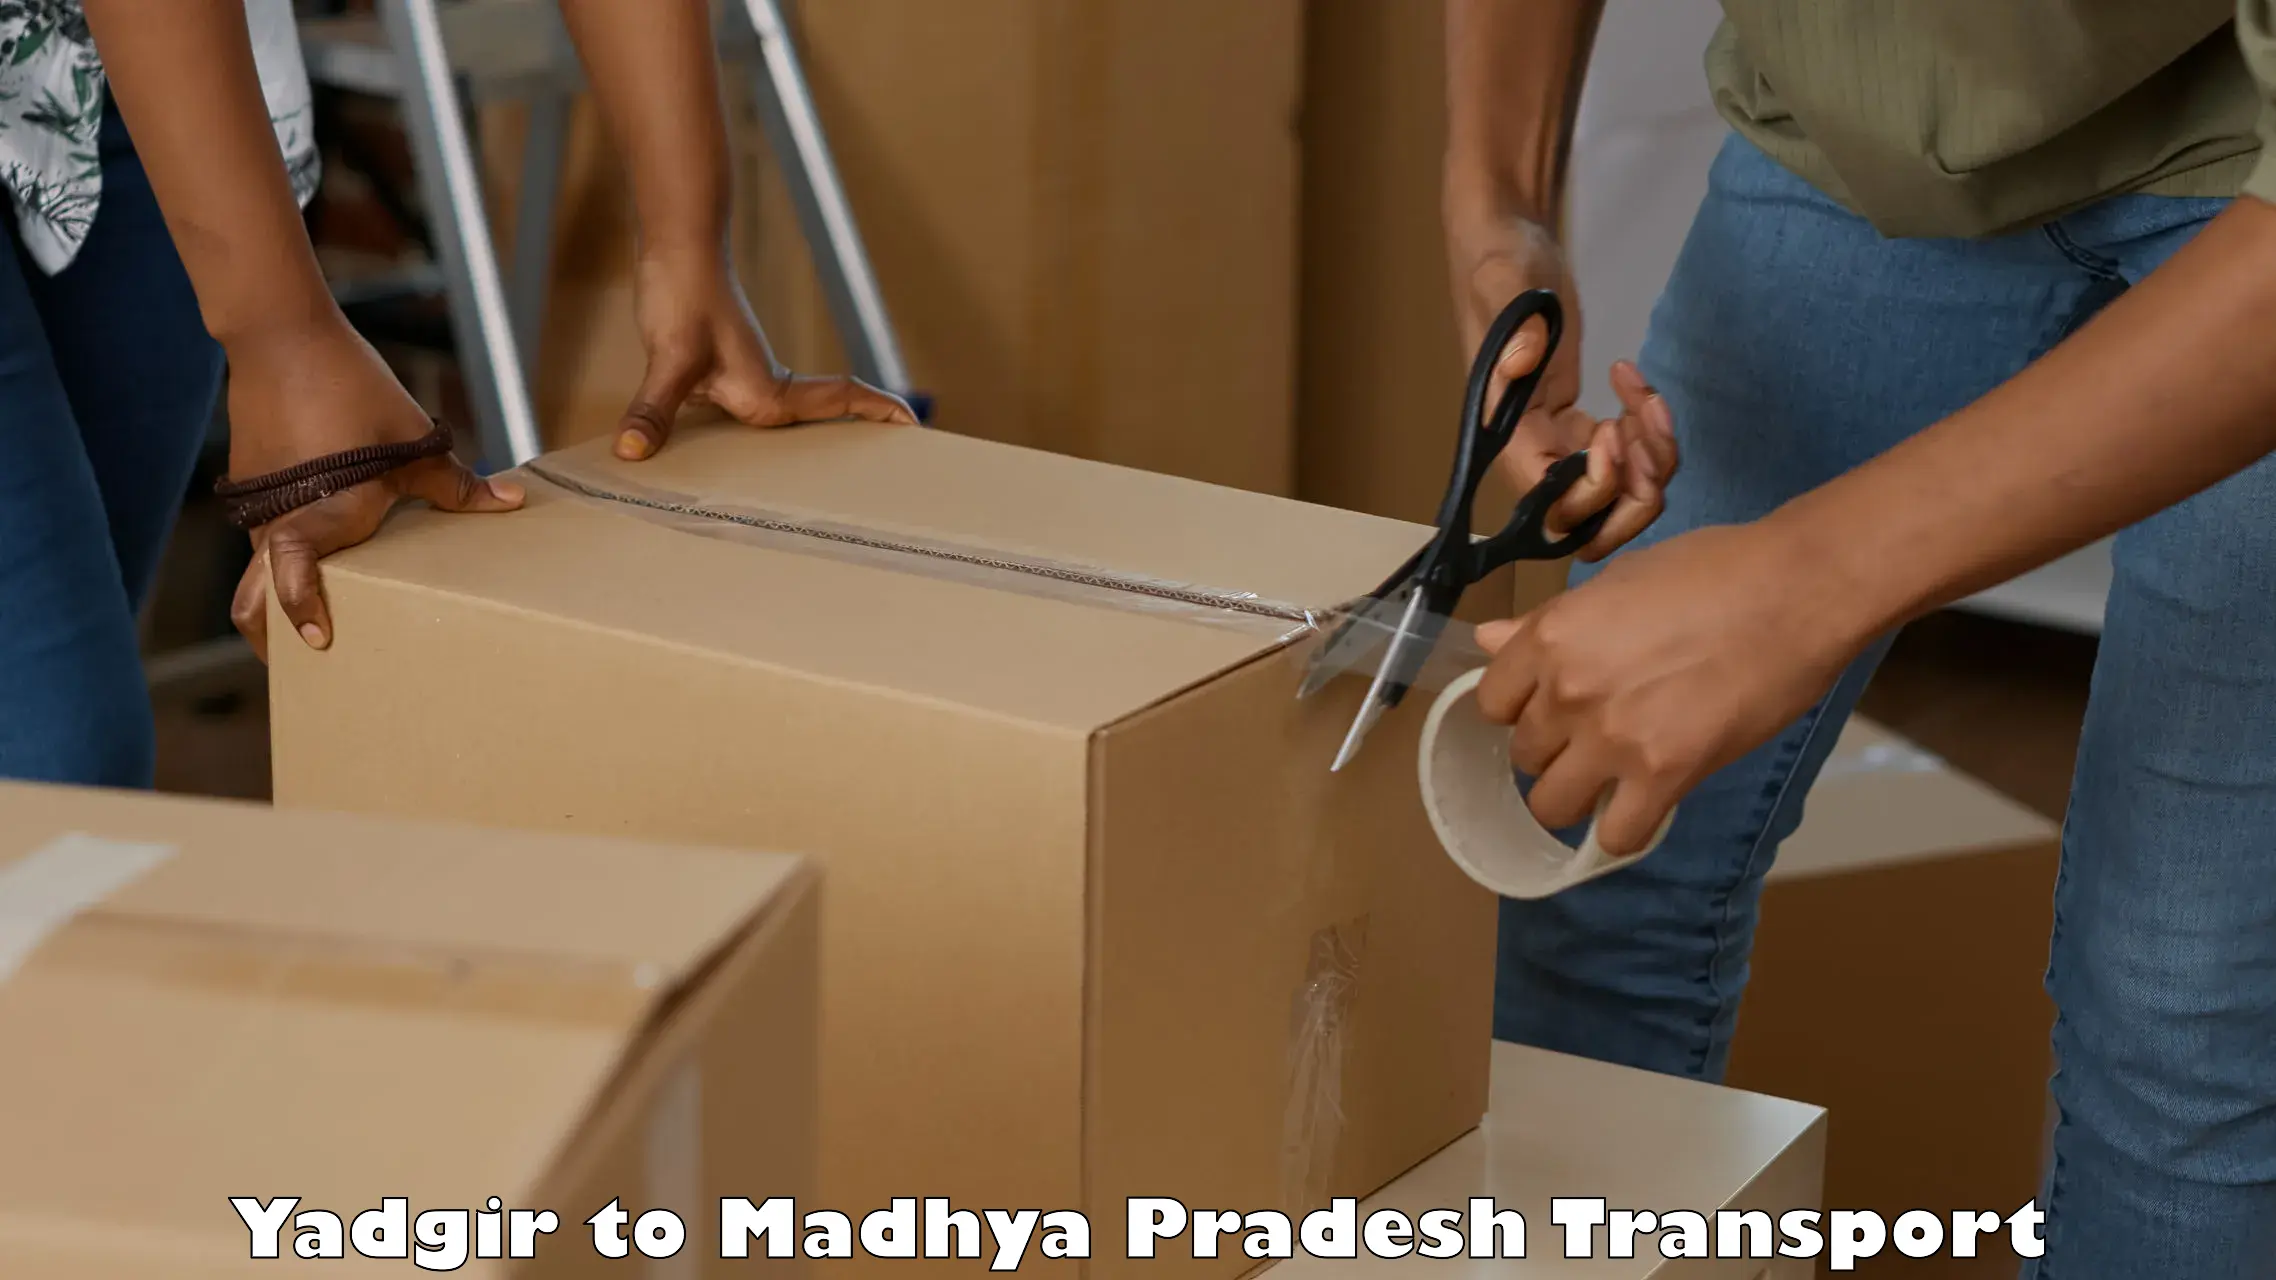 Material transport services Yadgir to Lashkar